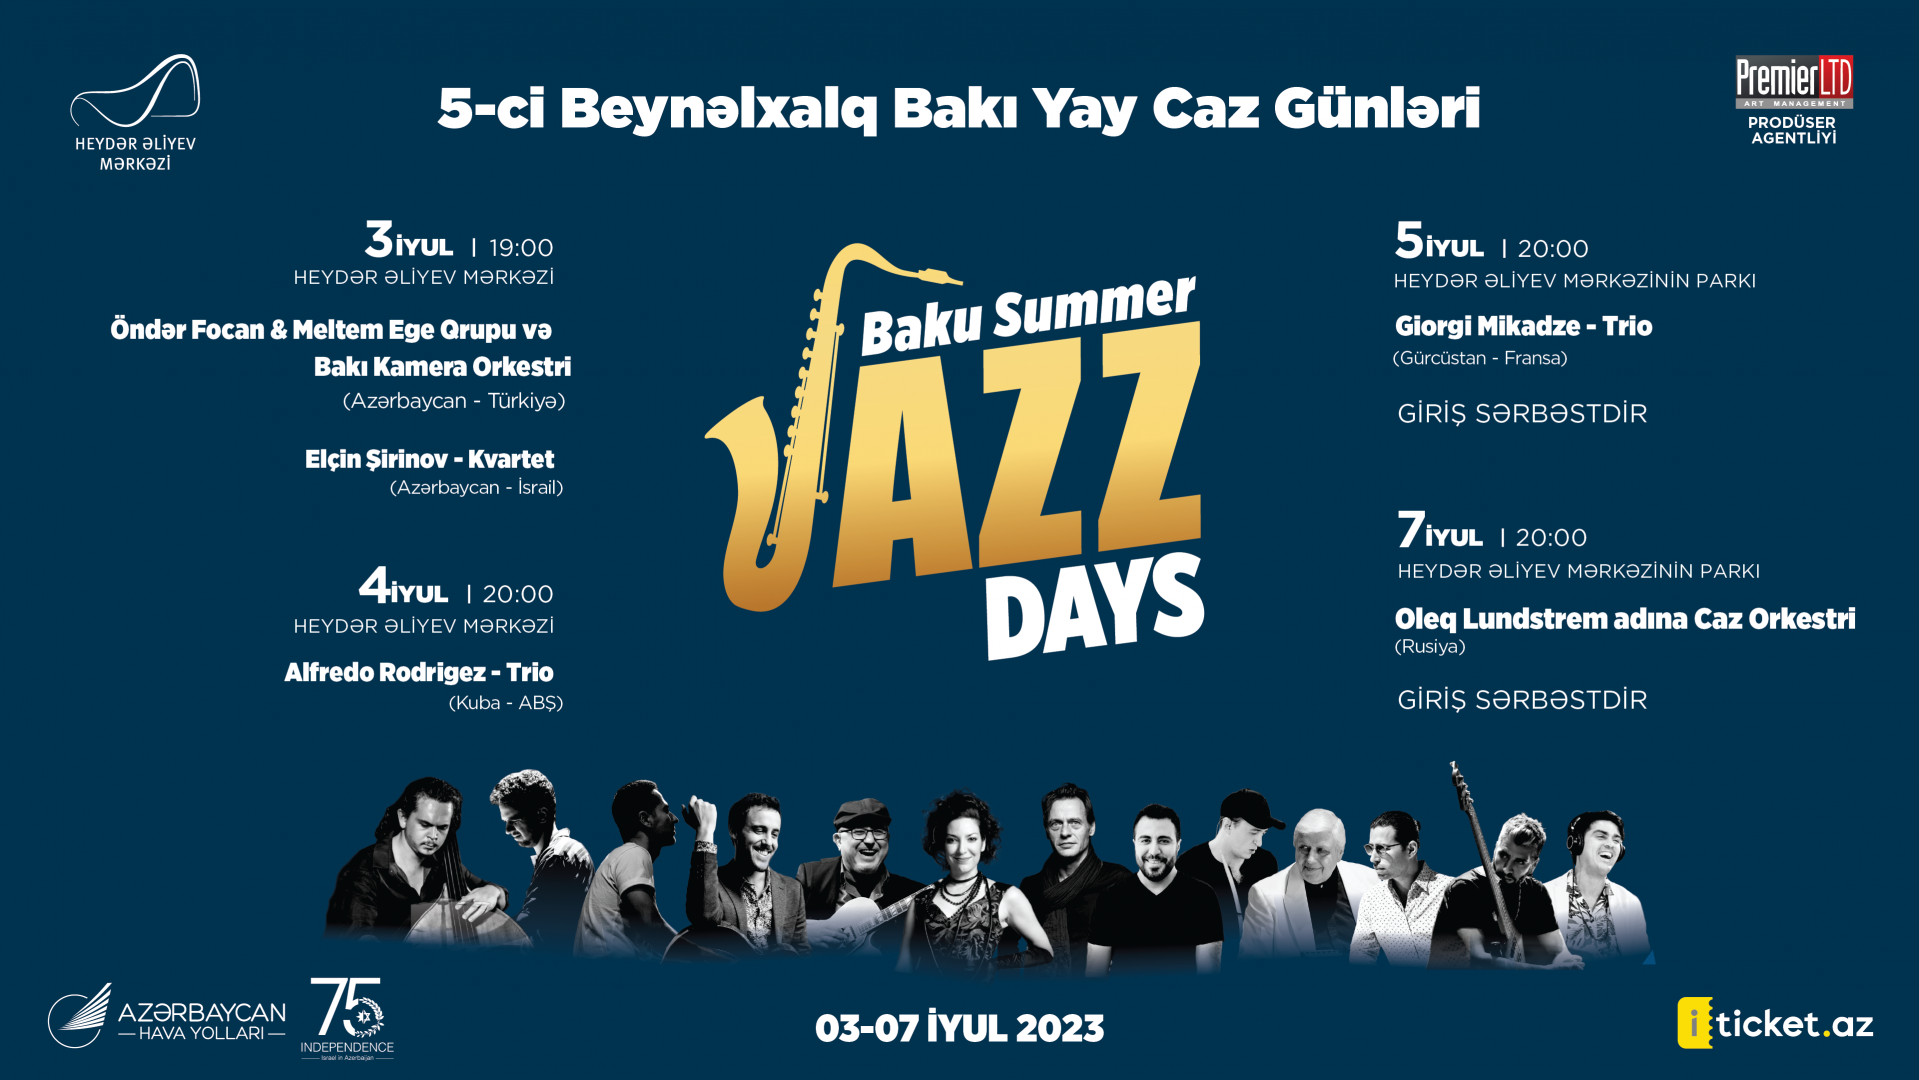 Int'l Baku Summer Jazz Days awaits music lovers [VIDEO]